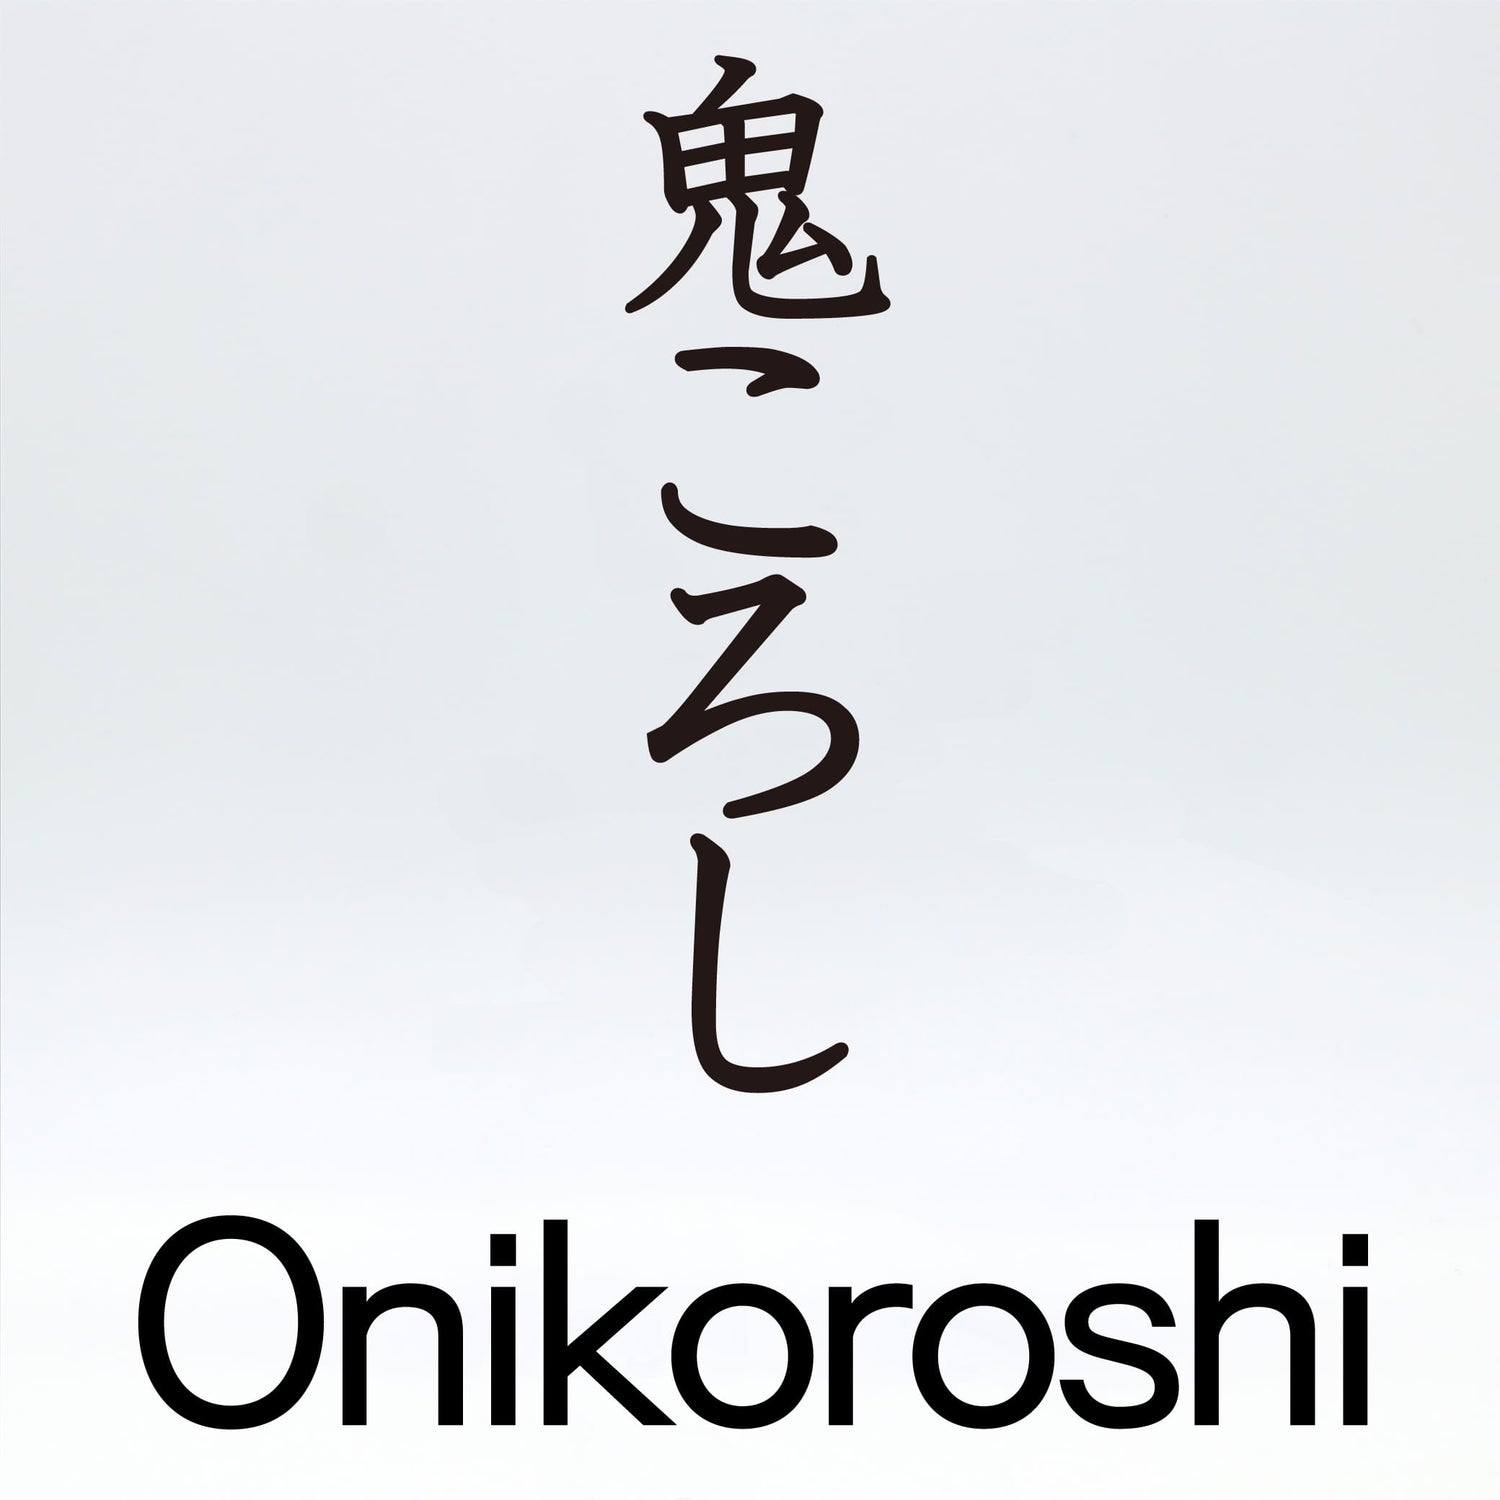 鬼ころし【Oni koroshi】